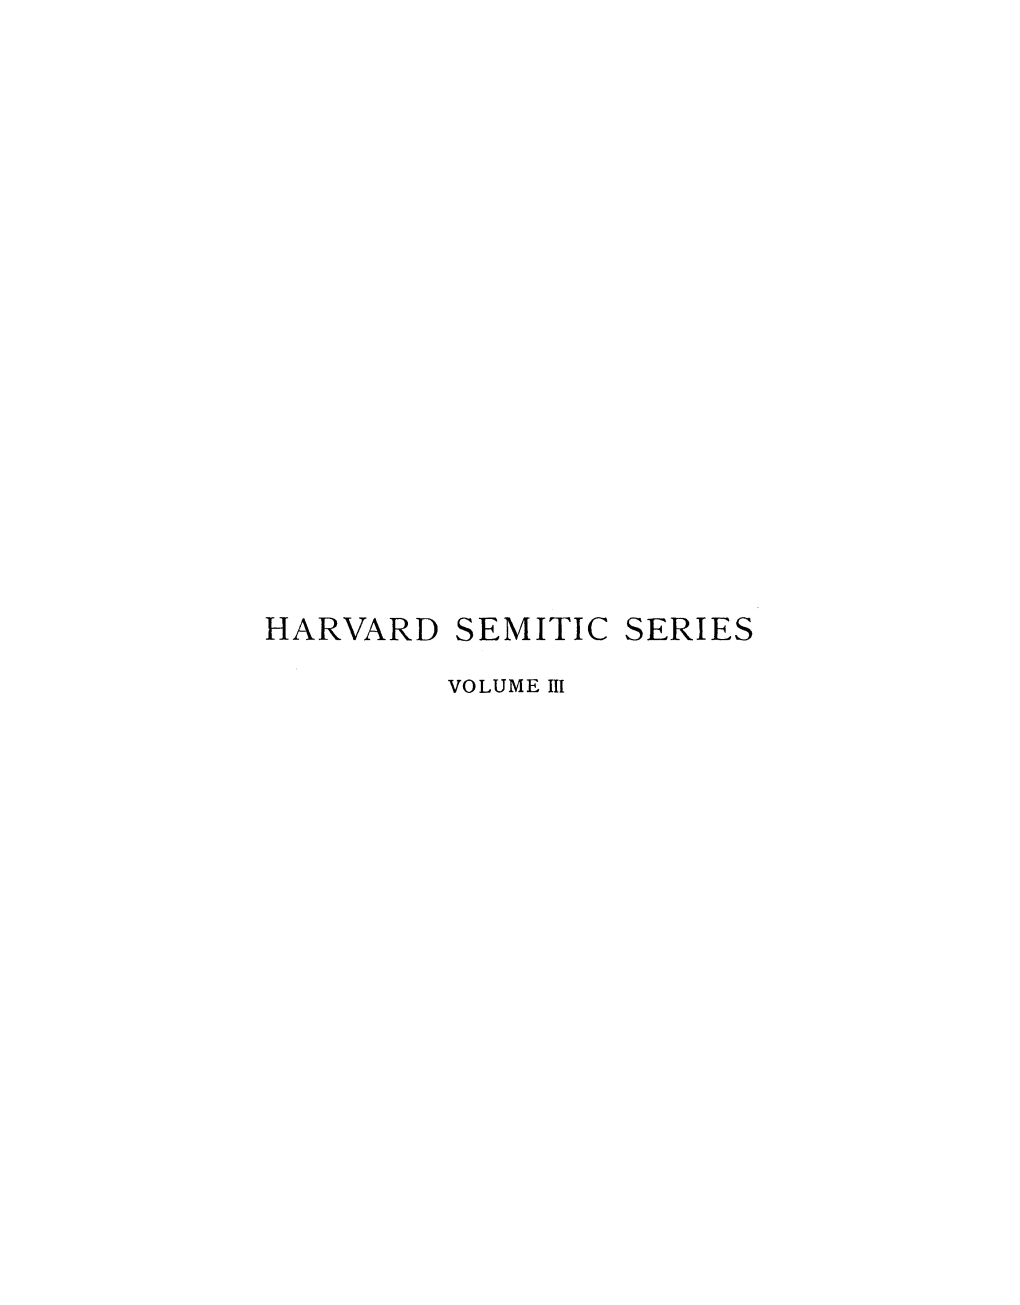 Harvard Semitic Series